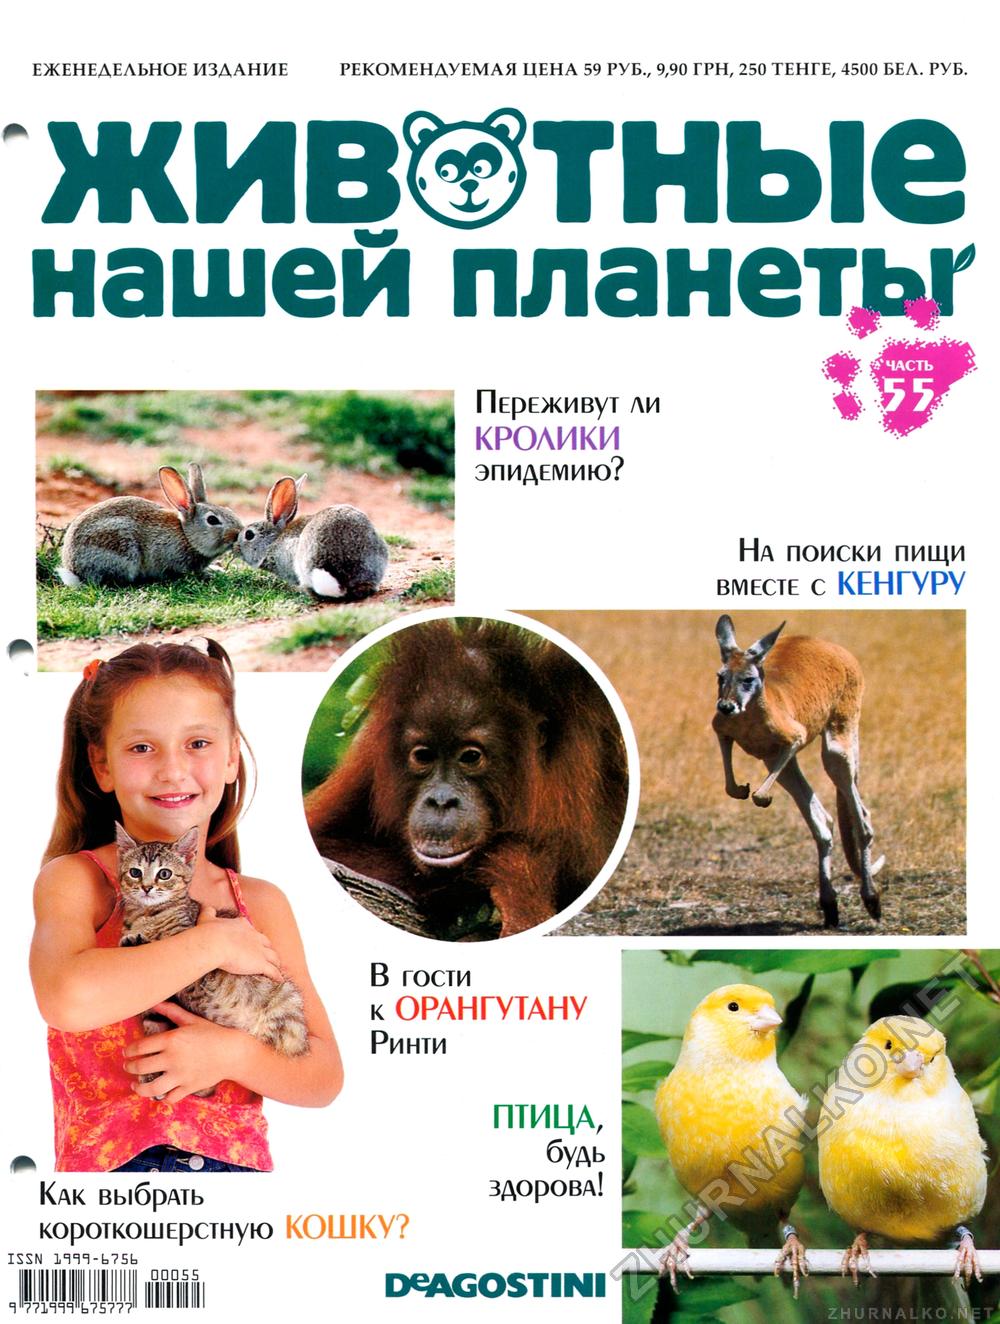 Обложки журналов про животных дизайн